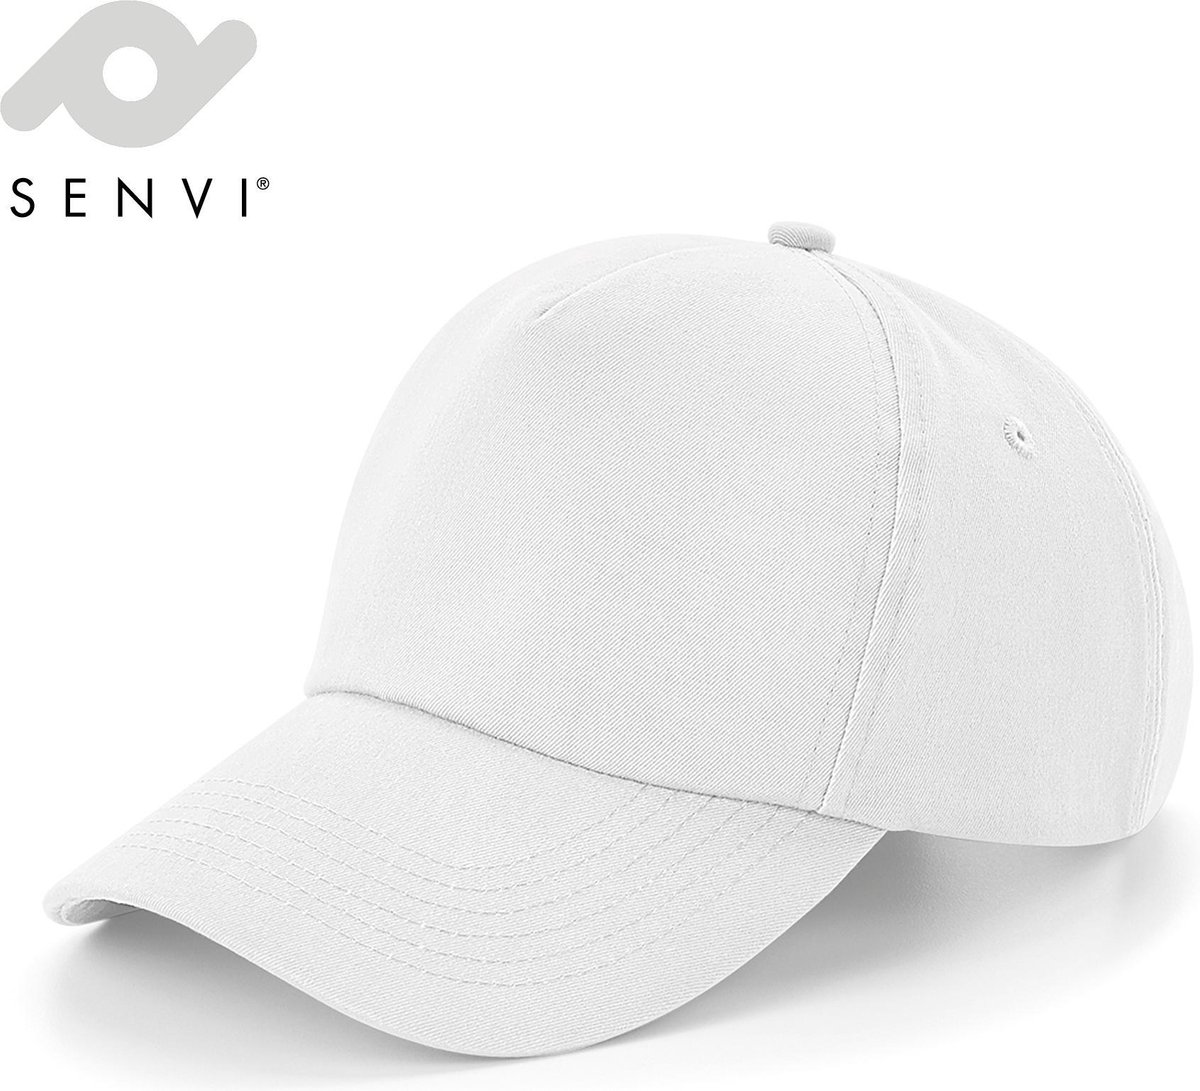 Senvi - Authentieke Cap - Kleur Wit - One size fits all